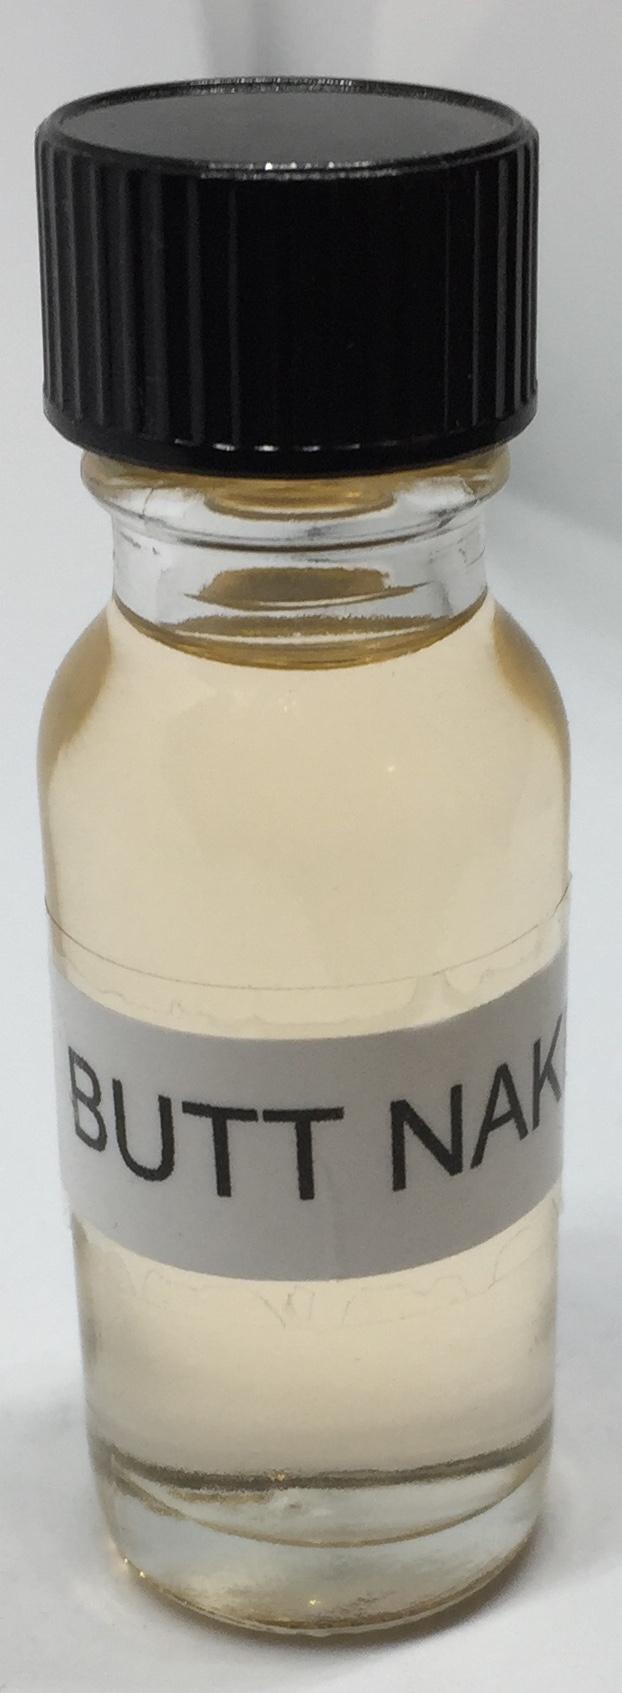 Butt Naked Fragrance Burning Oil